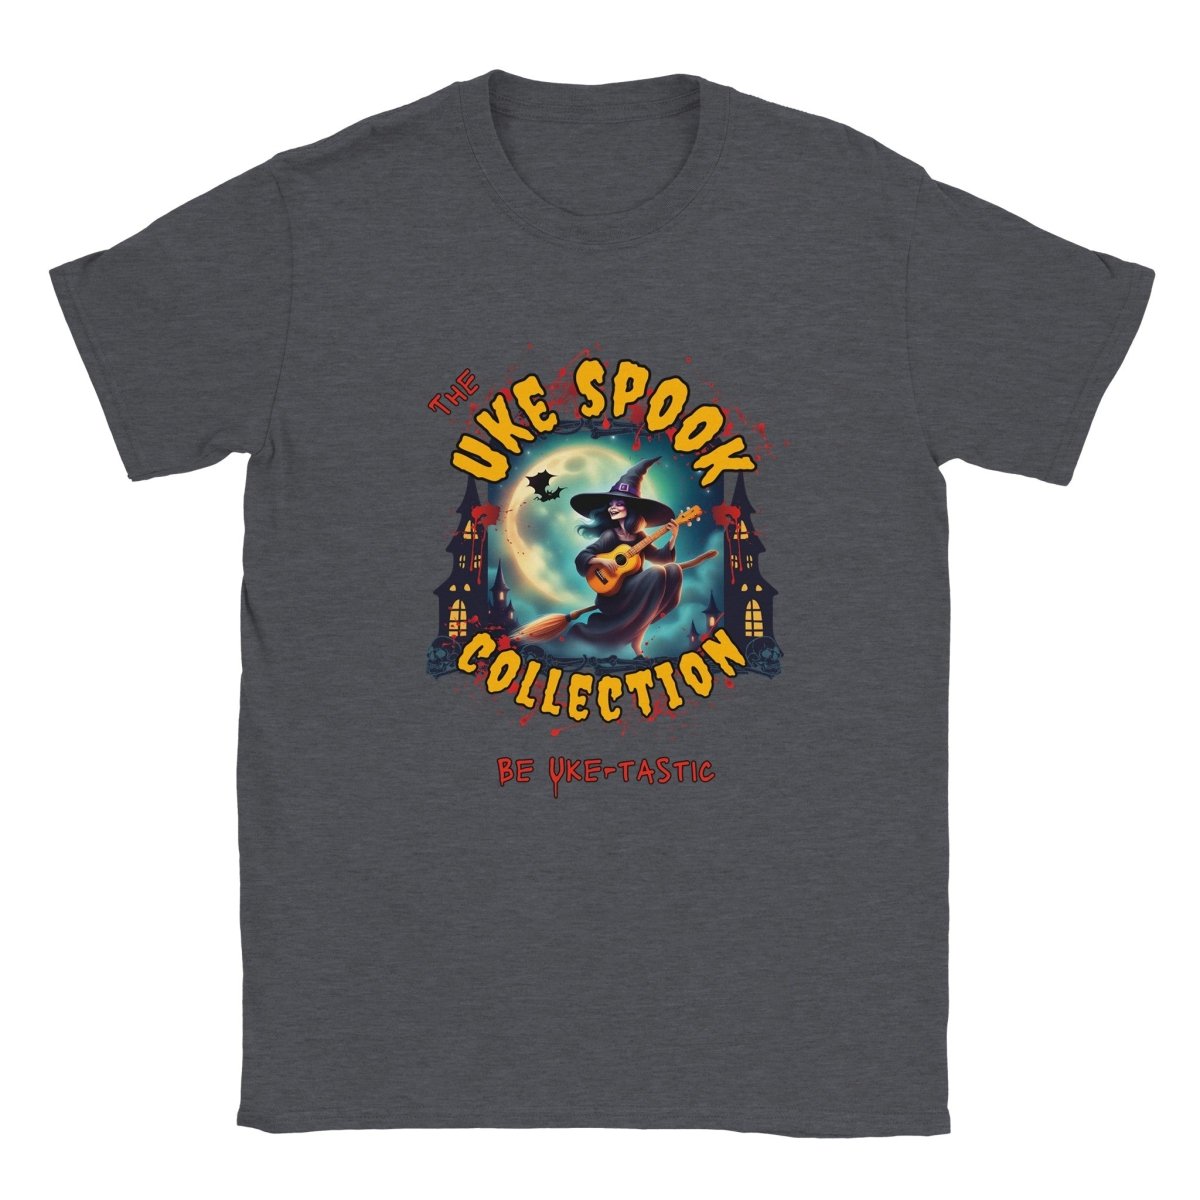 Uke Spook Witch - Classic Unisex Crewneck T-shirt - Uke Tastic - Dark Heather - The Uke Spook Collection - Uke Tastic